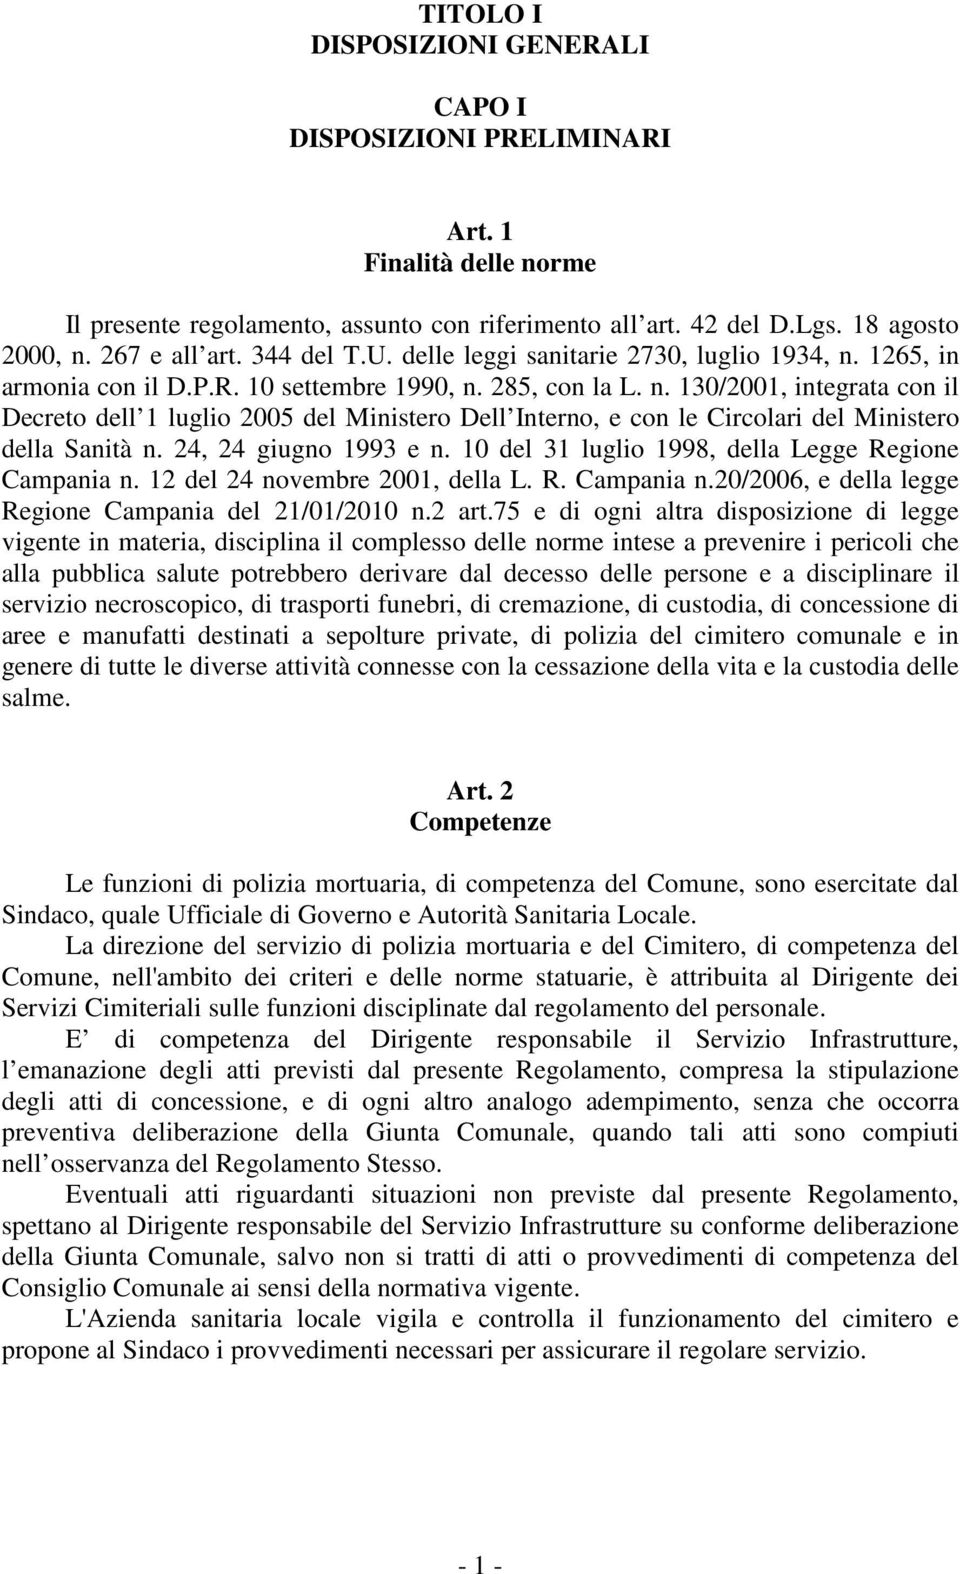 24, 24 giugno 1993 e n. 10 del 31 luglio 1998, della Legge Regione Campania n. 12 del 24 novembre 2001, della L. R. Campania n.20/2006, e della legge Regione Campania del 21/01/2010 n.2 art.